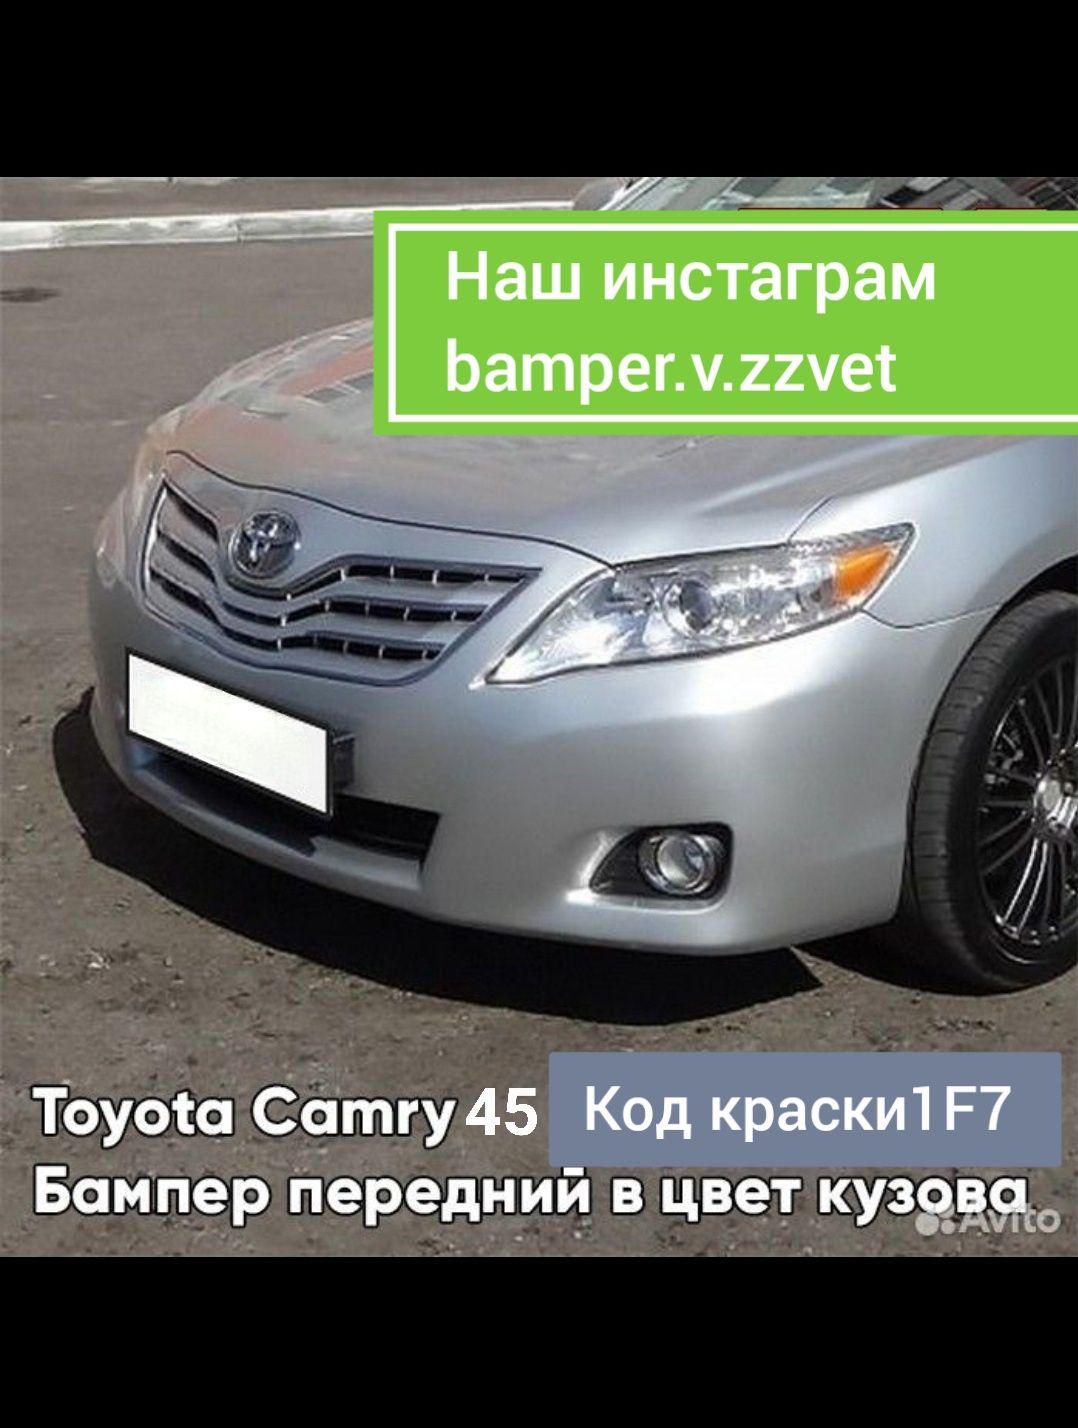 Бампера и кузовные элементы в цвет кузова на Камри 40-45 Петропавловск